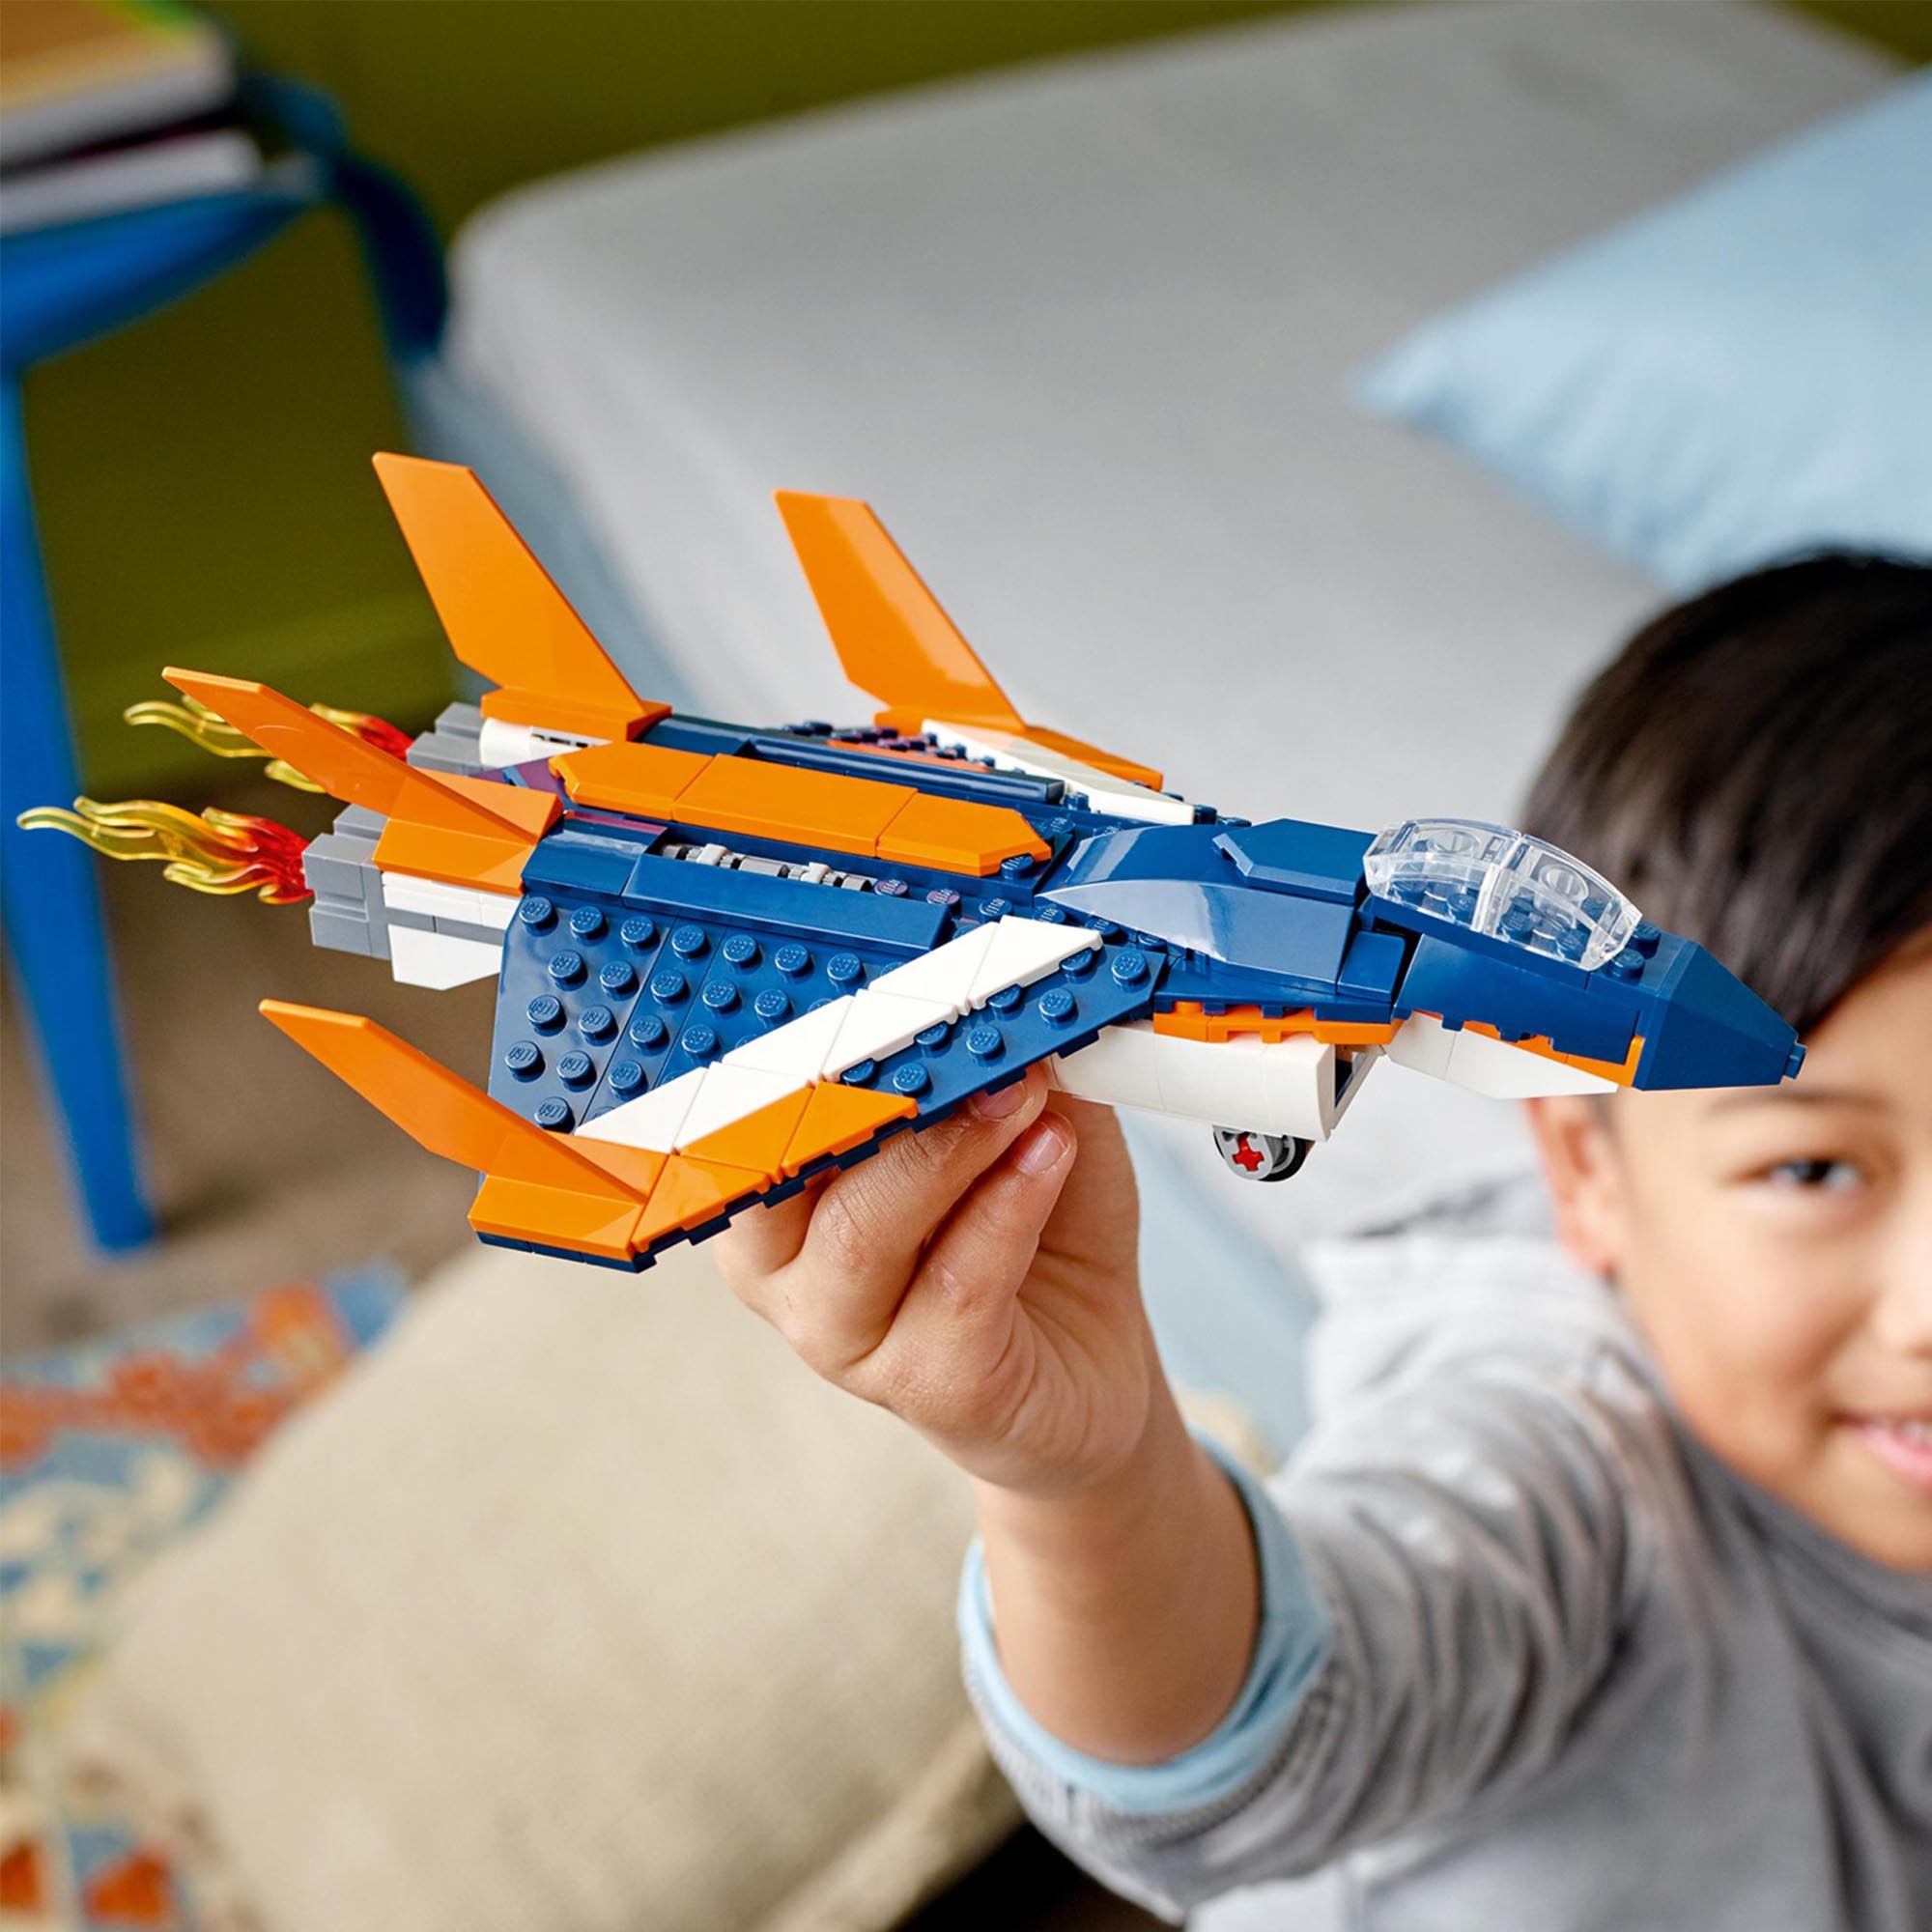 LEGO Creator 3in1 Jet Supersonico, Giocattoli Creativi di Costruzione per Bambin 31126, , large